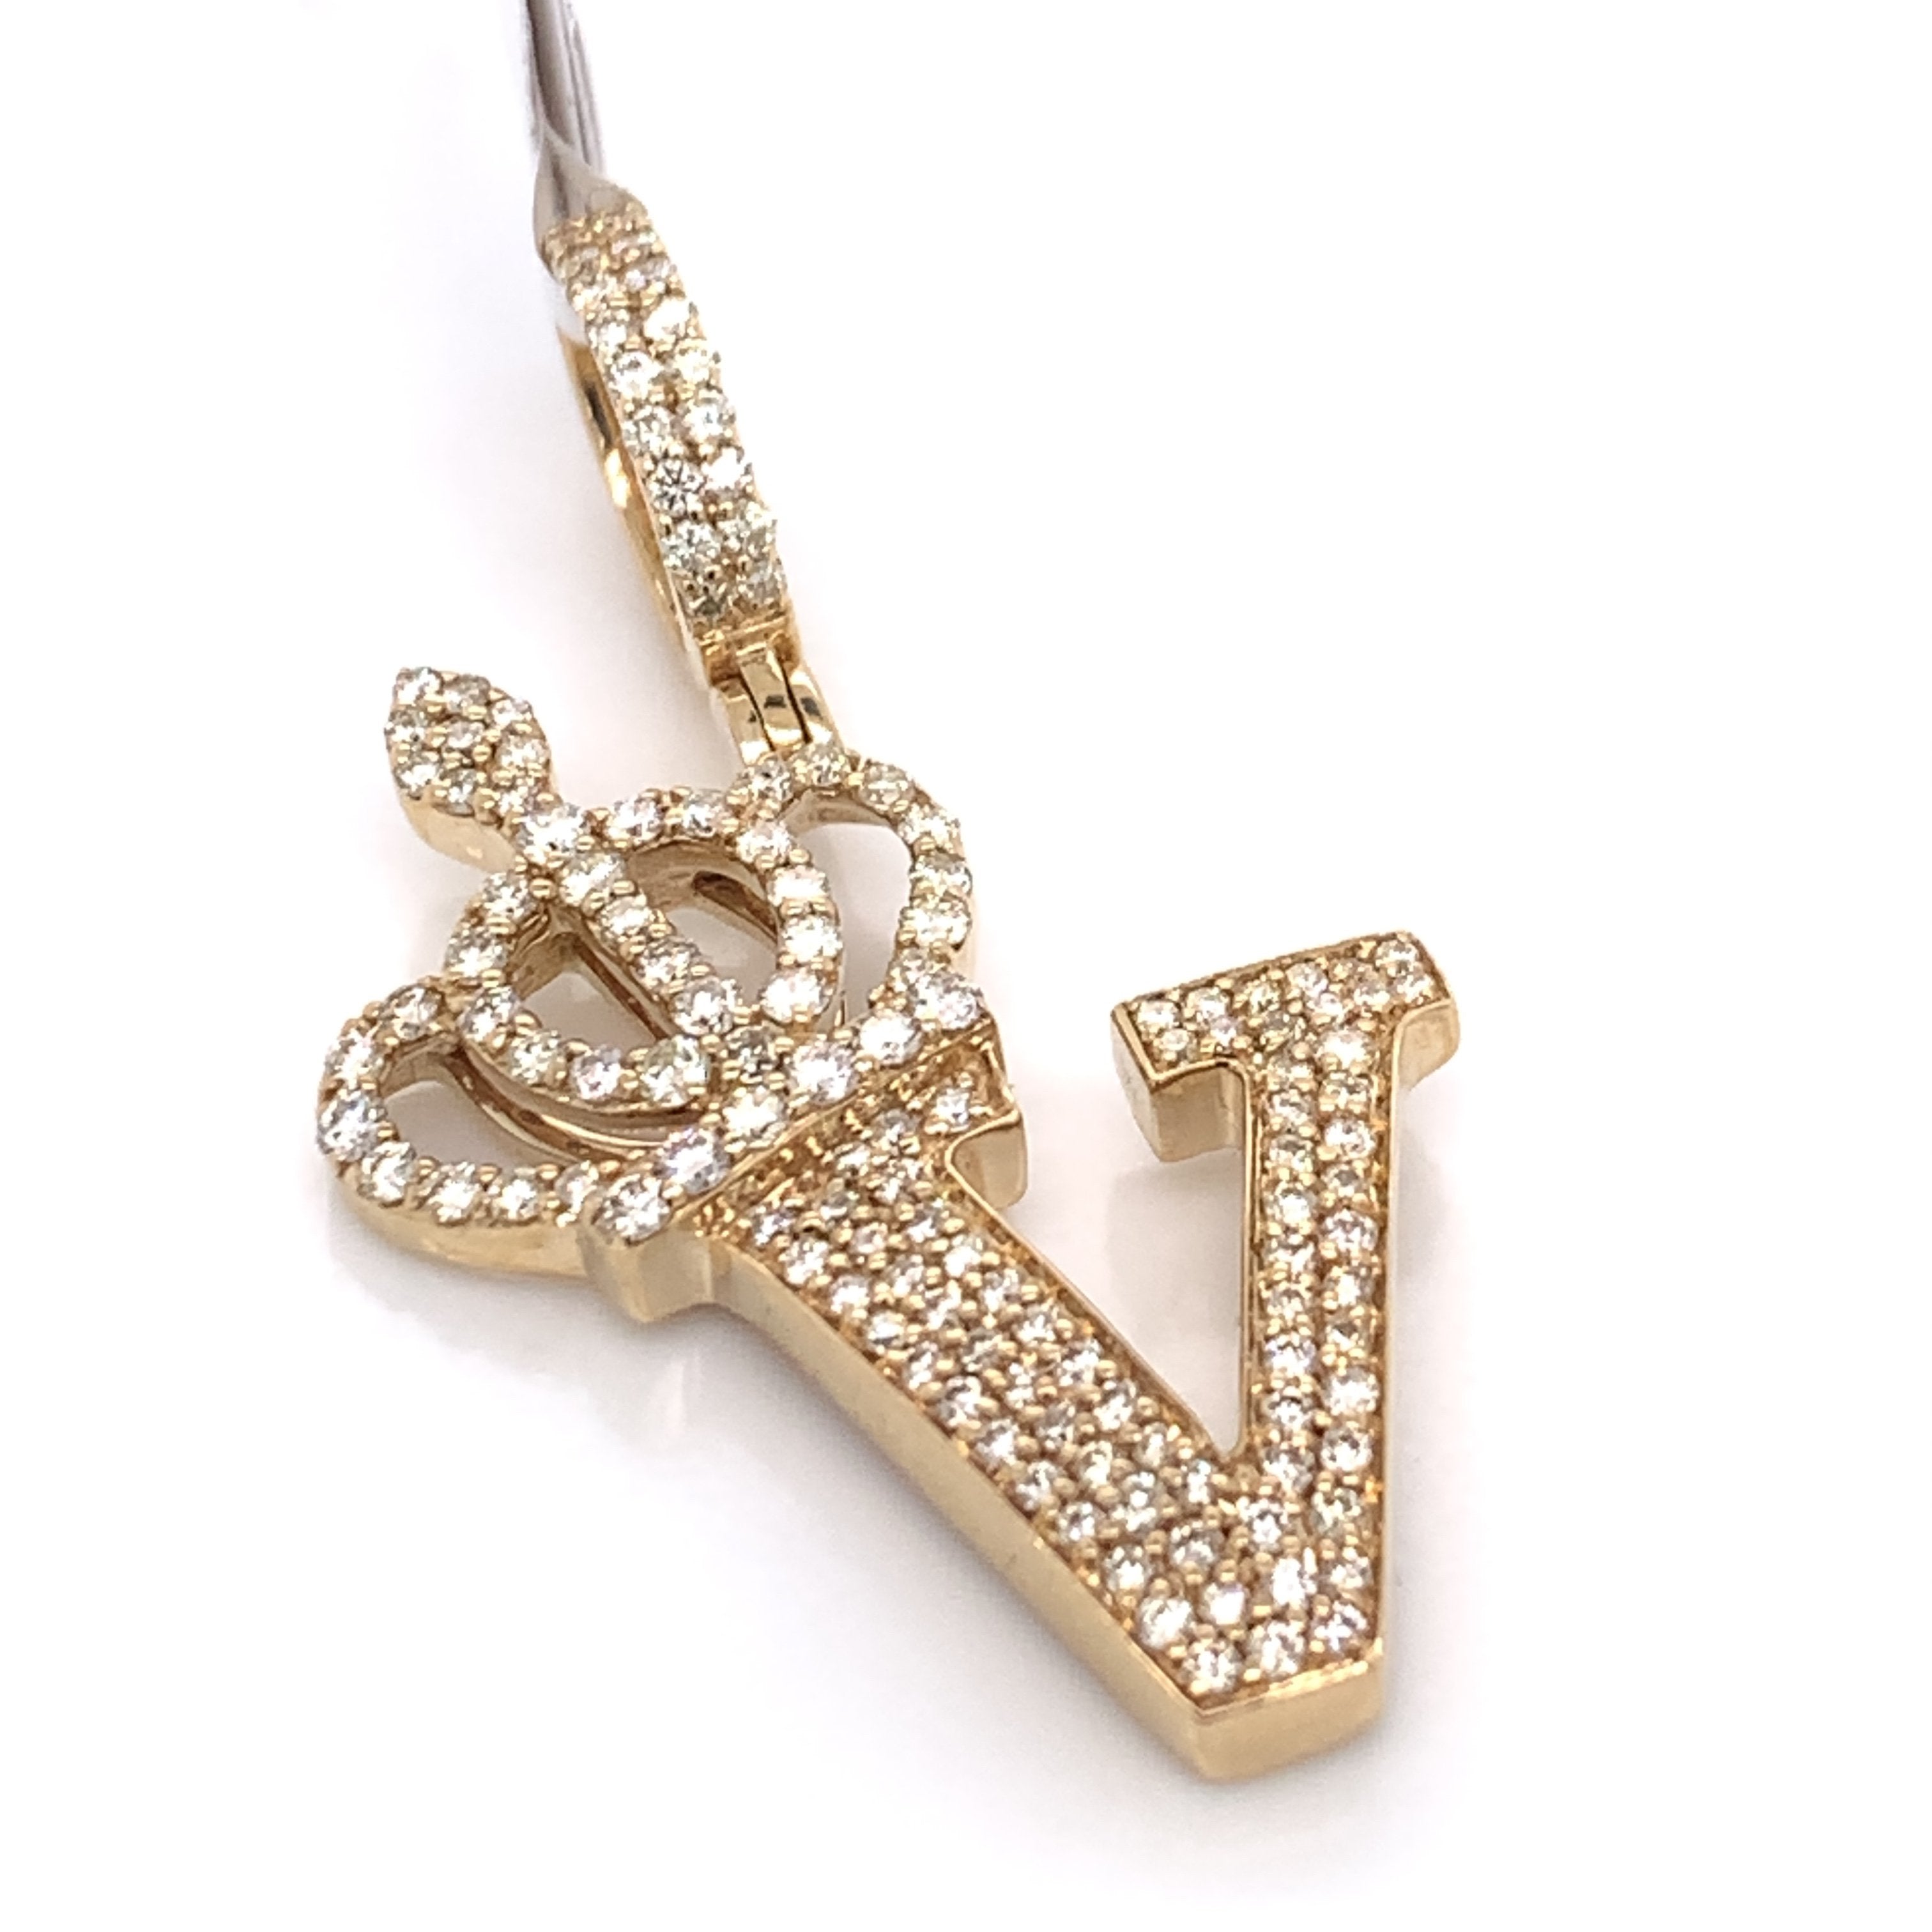 1.30 CT. Diamond Initial "V" Pendant in 10K Gold - White Carat Diamonds 